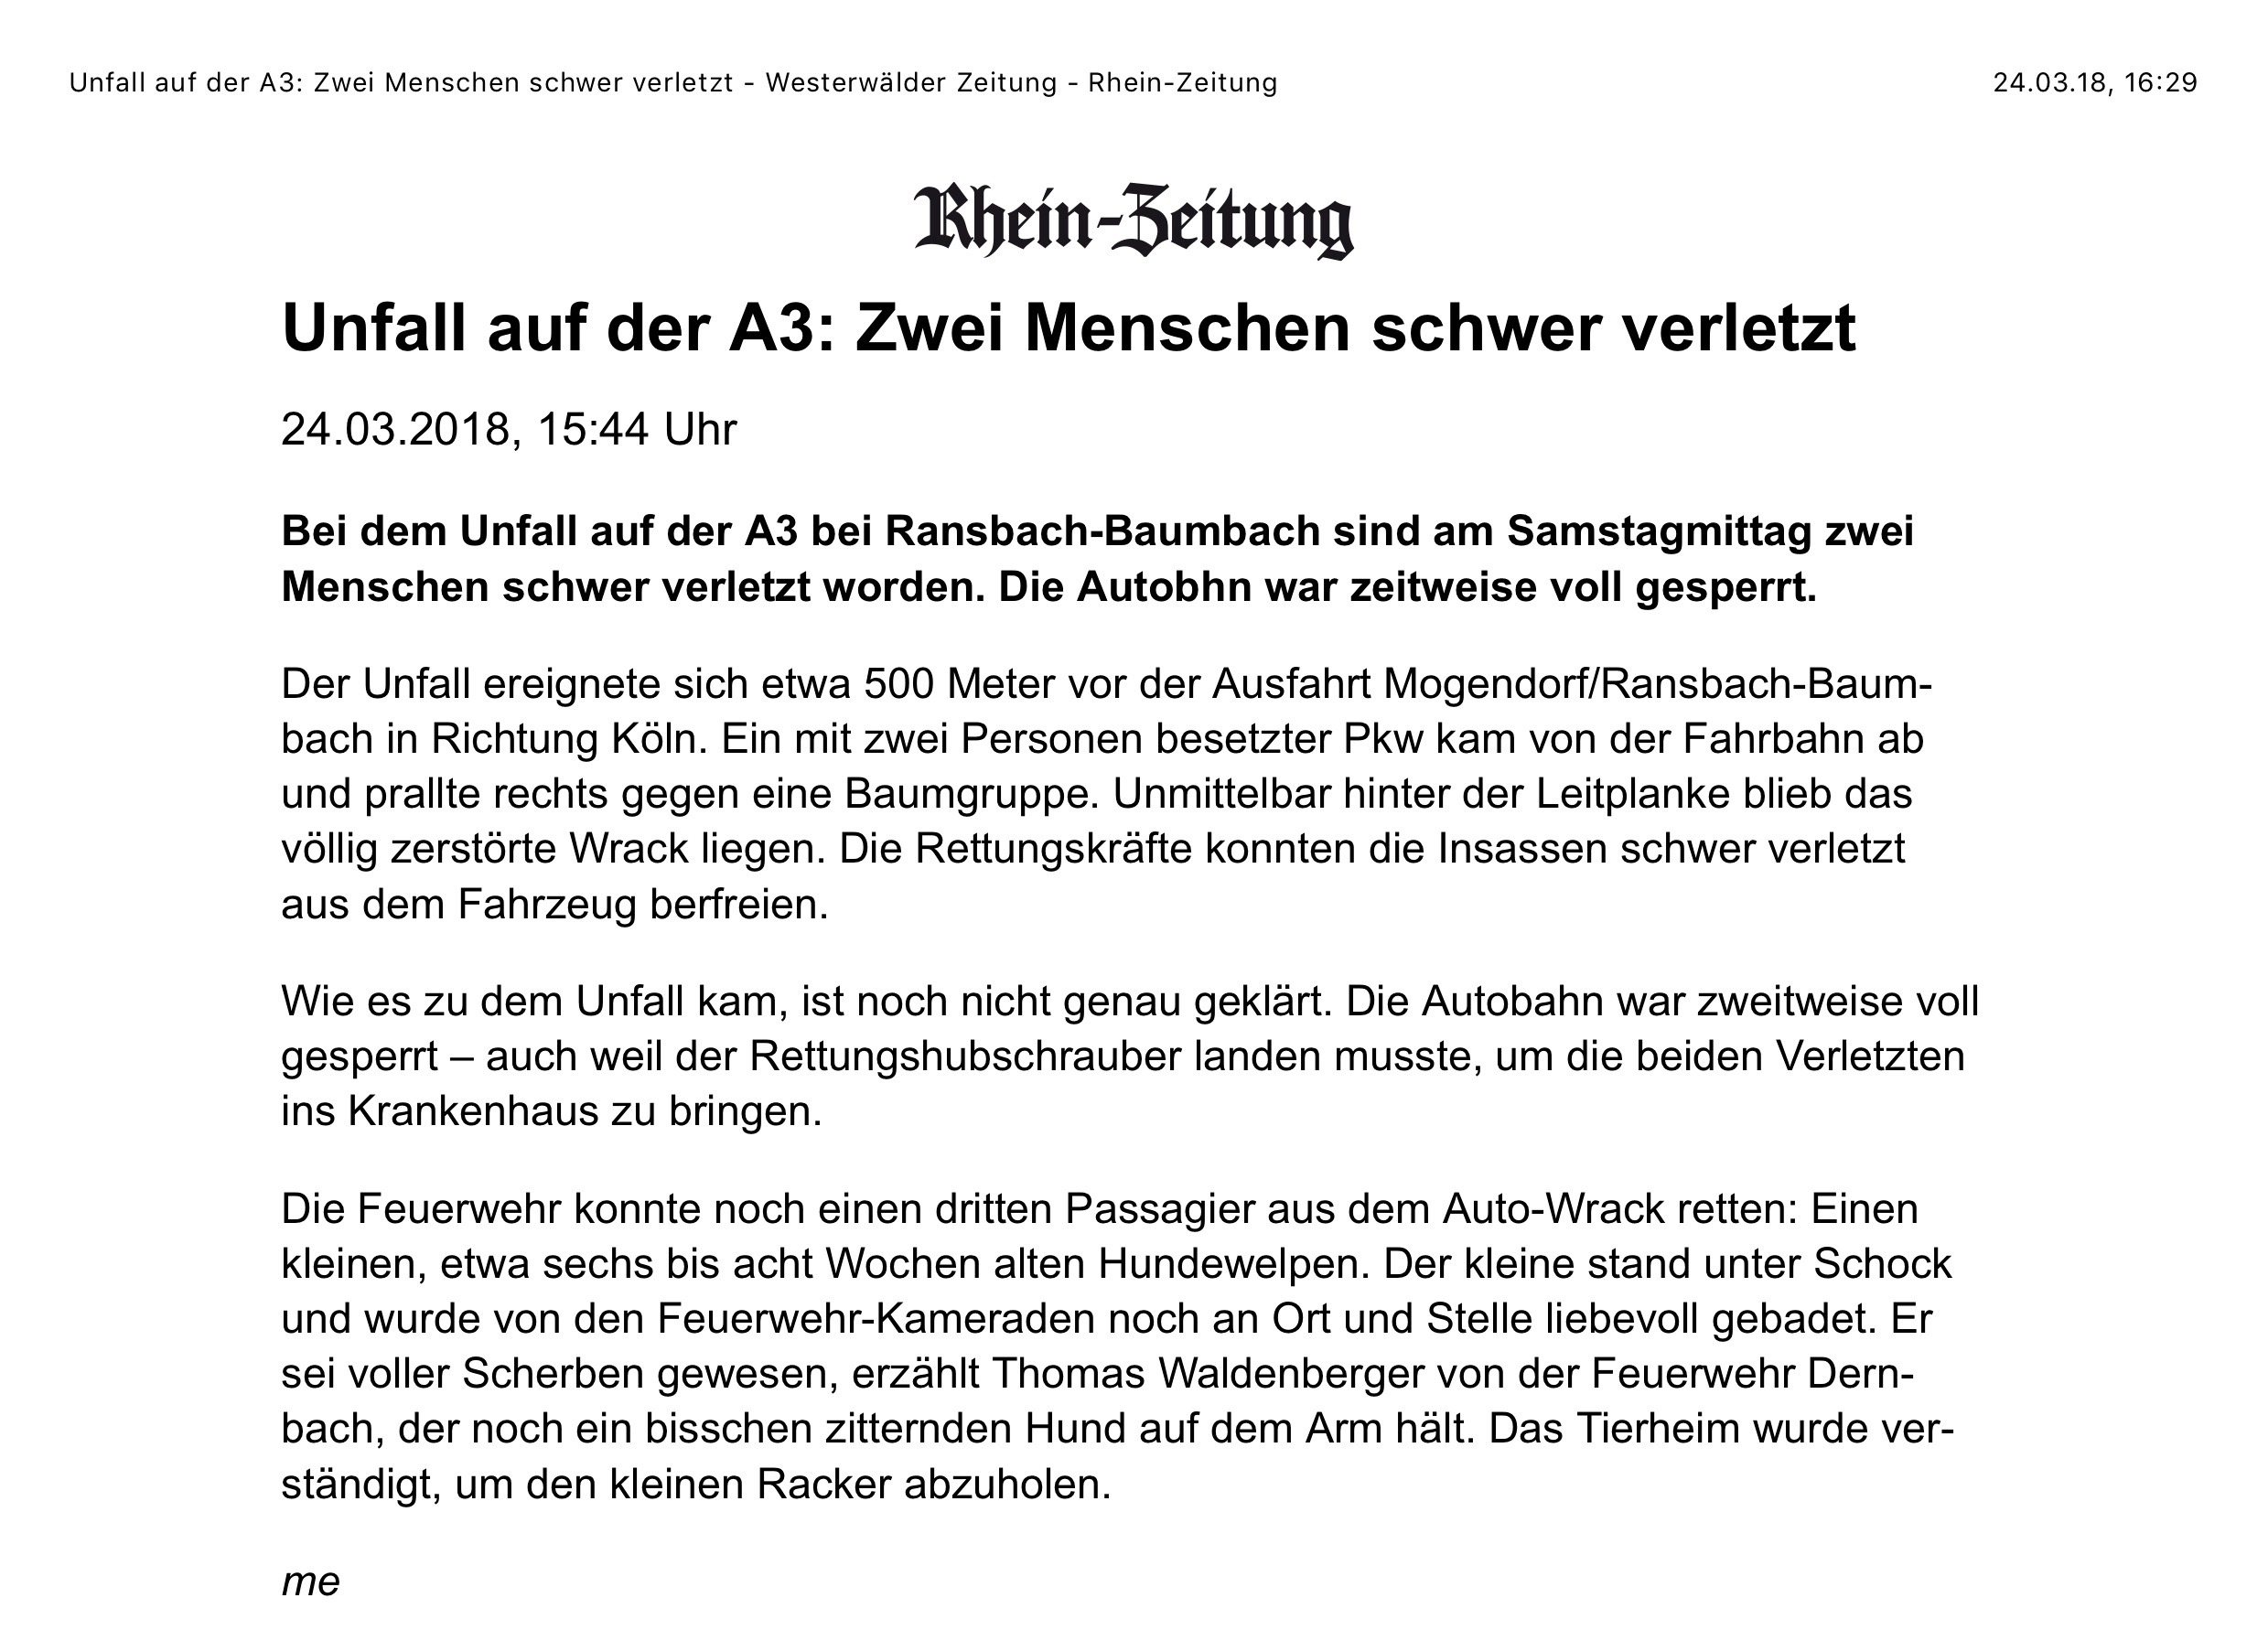 Unfall auf der A3 Zwei Menschen schwer verletzt Westerwälder Zeitung Rhein Zeitung